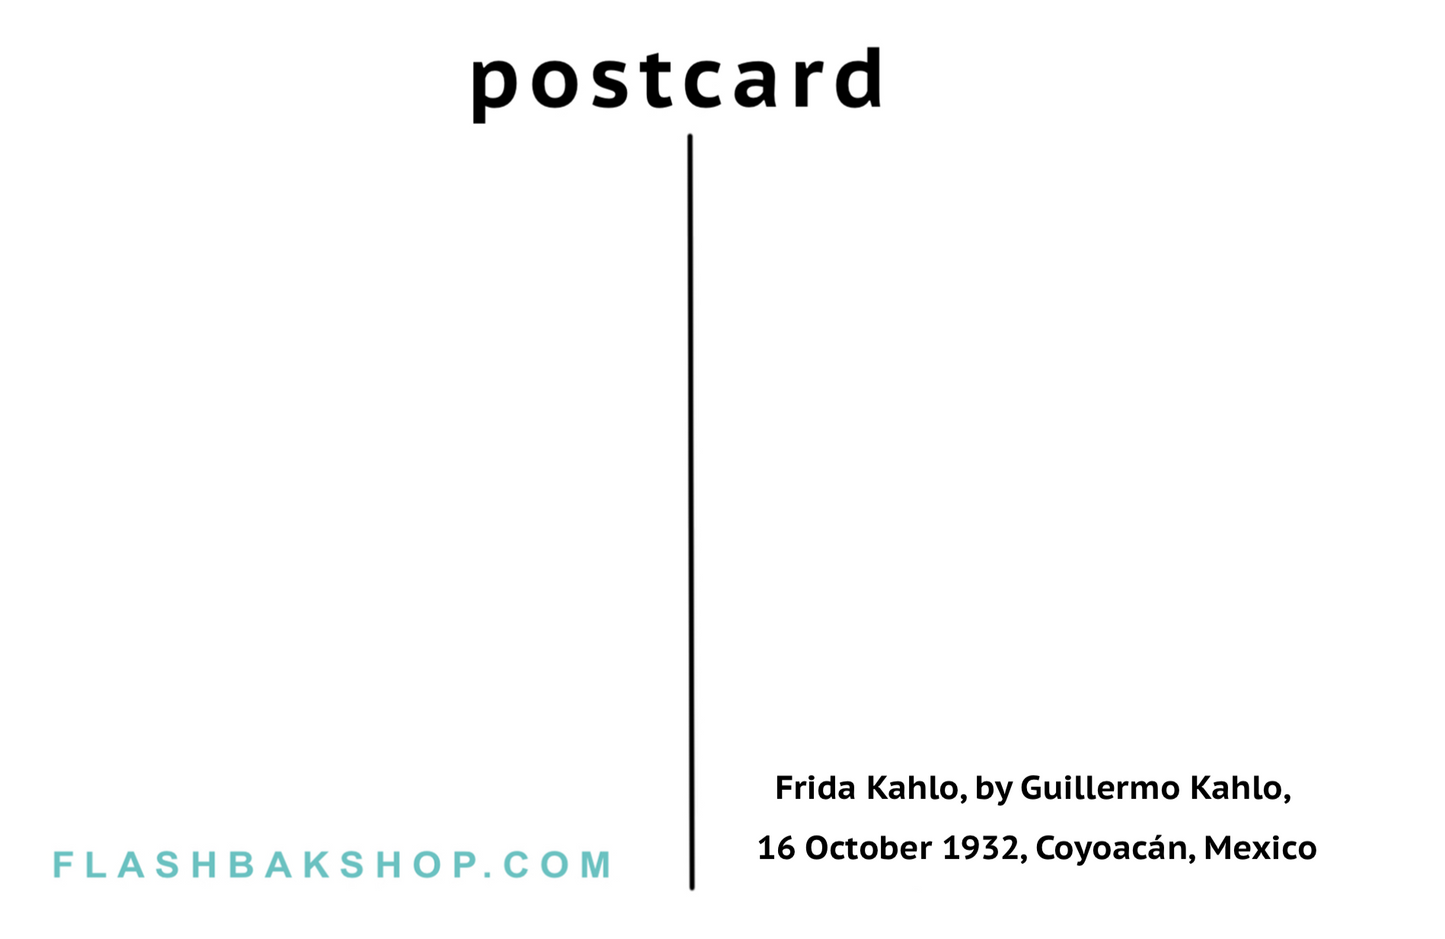 Frida Kahlo, par Guillermo Kahlo, Coyoacán, Mexique, 16 octobre 1932 - Carte postale